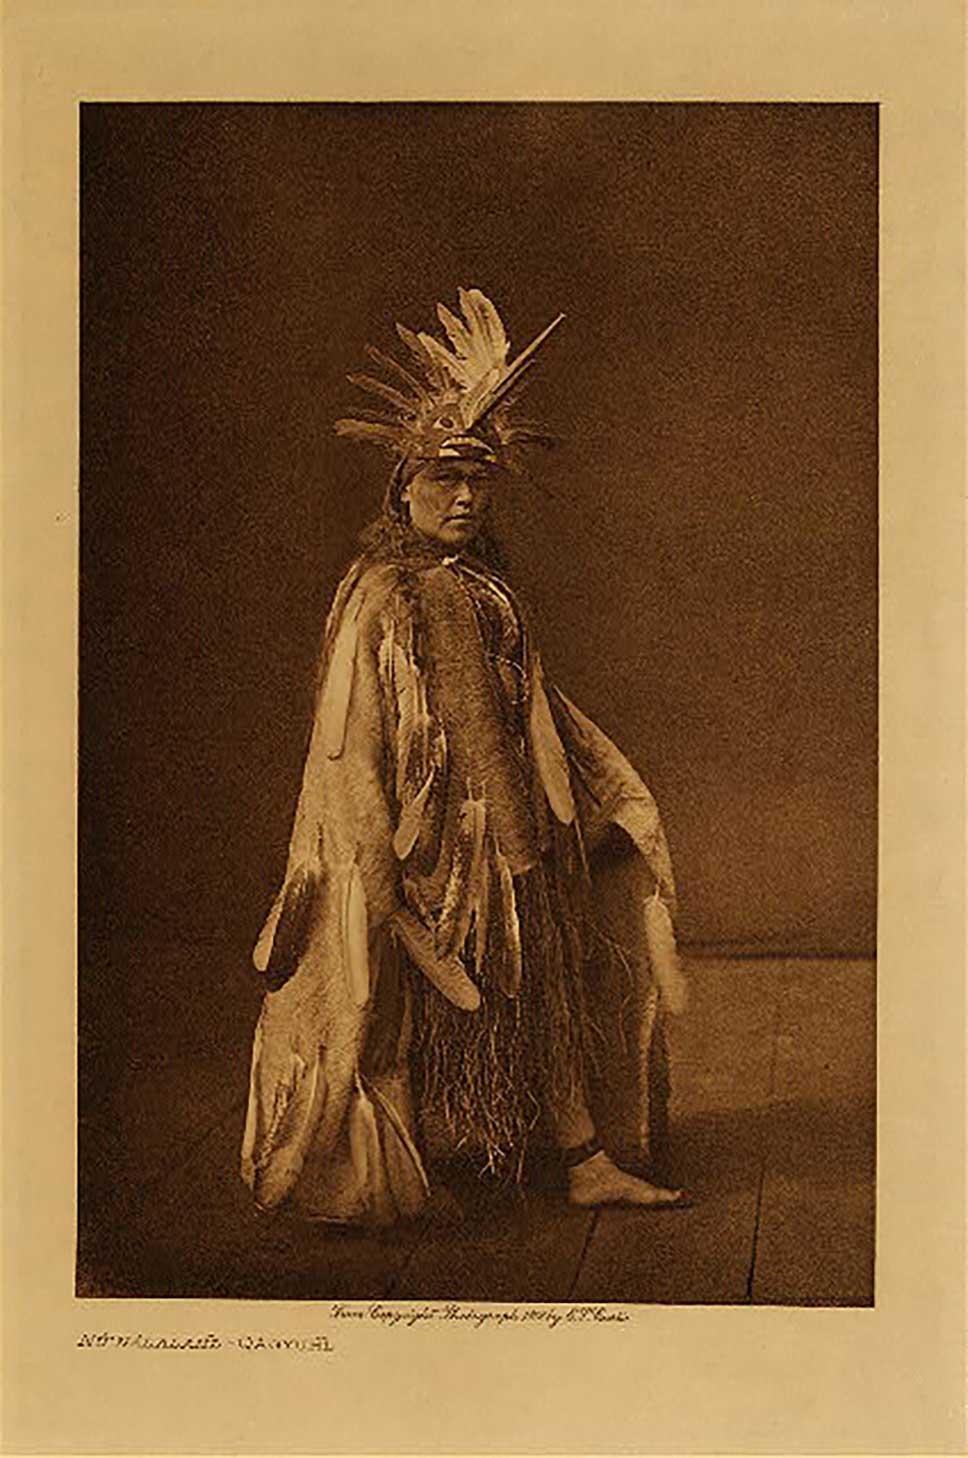 Photographie sépia par Edward Curtis, montrant un danseur en tenue cérémonielle portant une coiffe de la danse du Jour, 'Na'nalalał